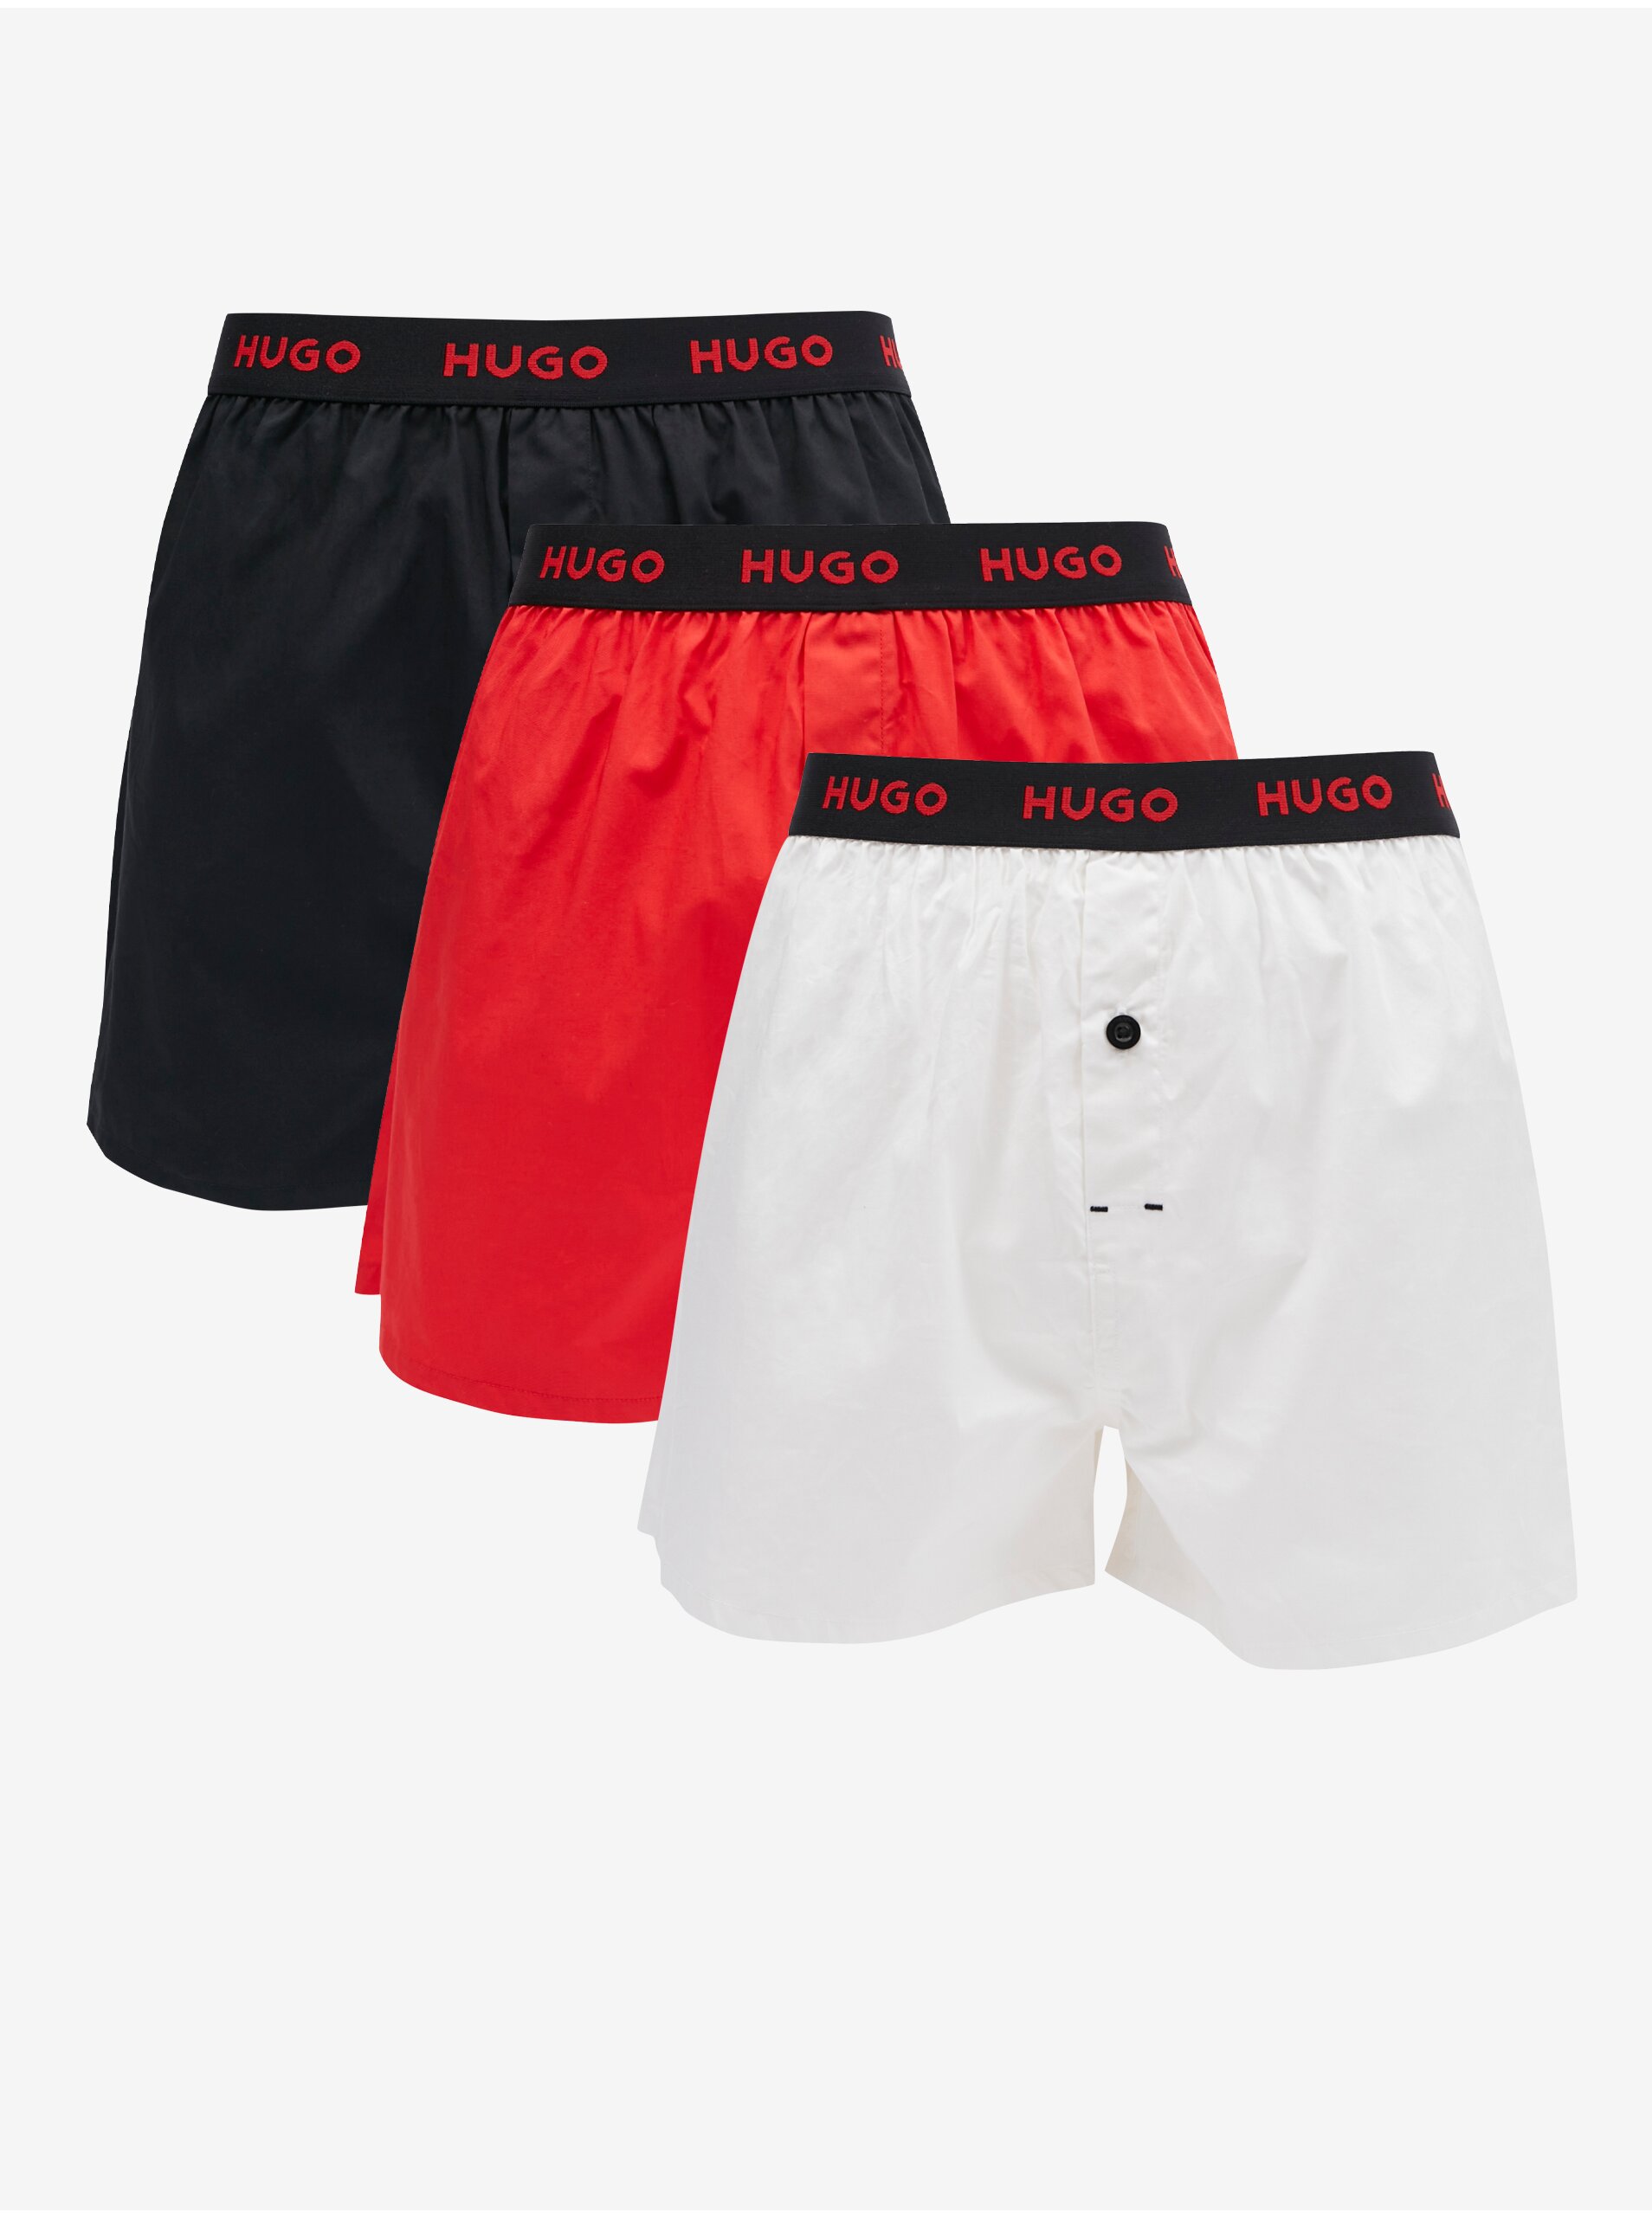 Lacno Súprava troch pánskych trenírok v červenej, bielej a čiernej farbe HUGO